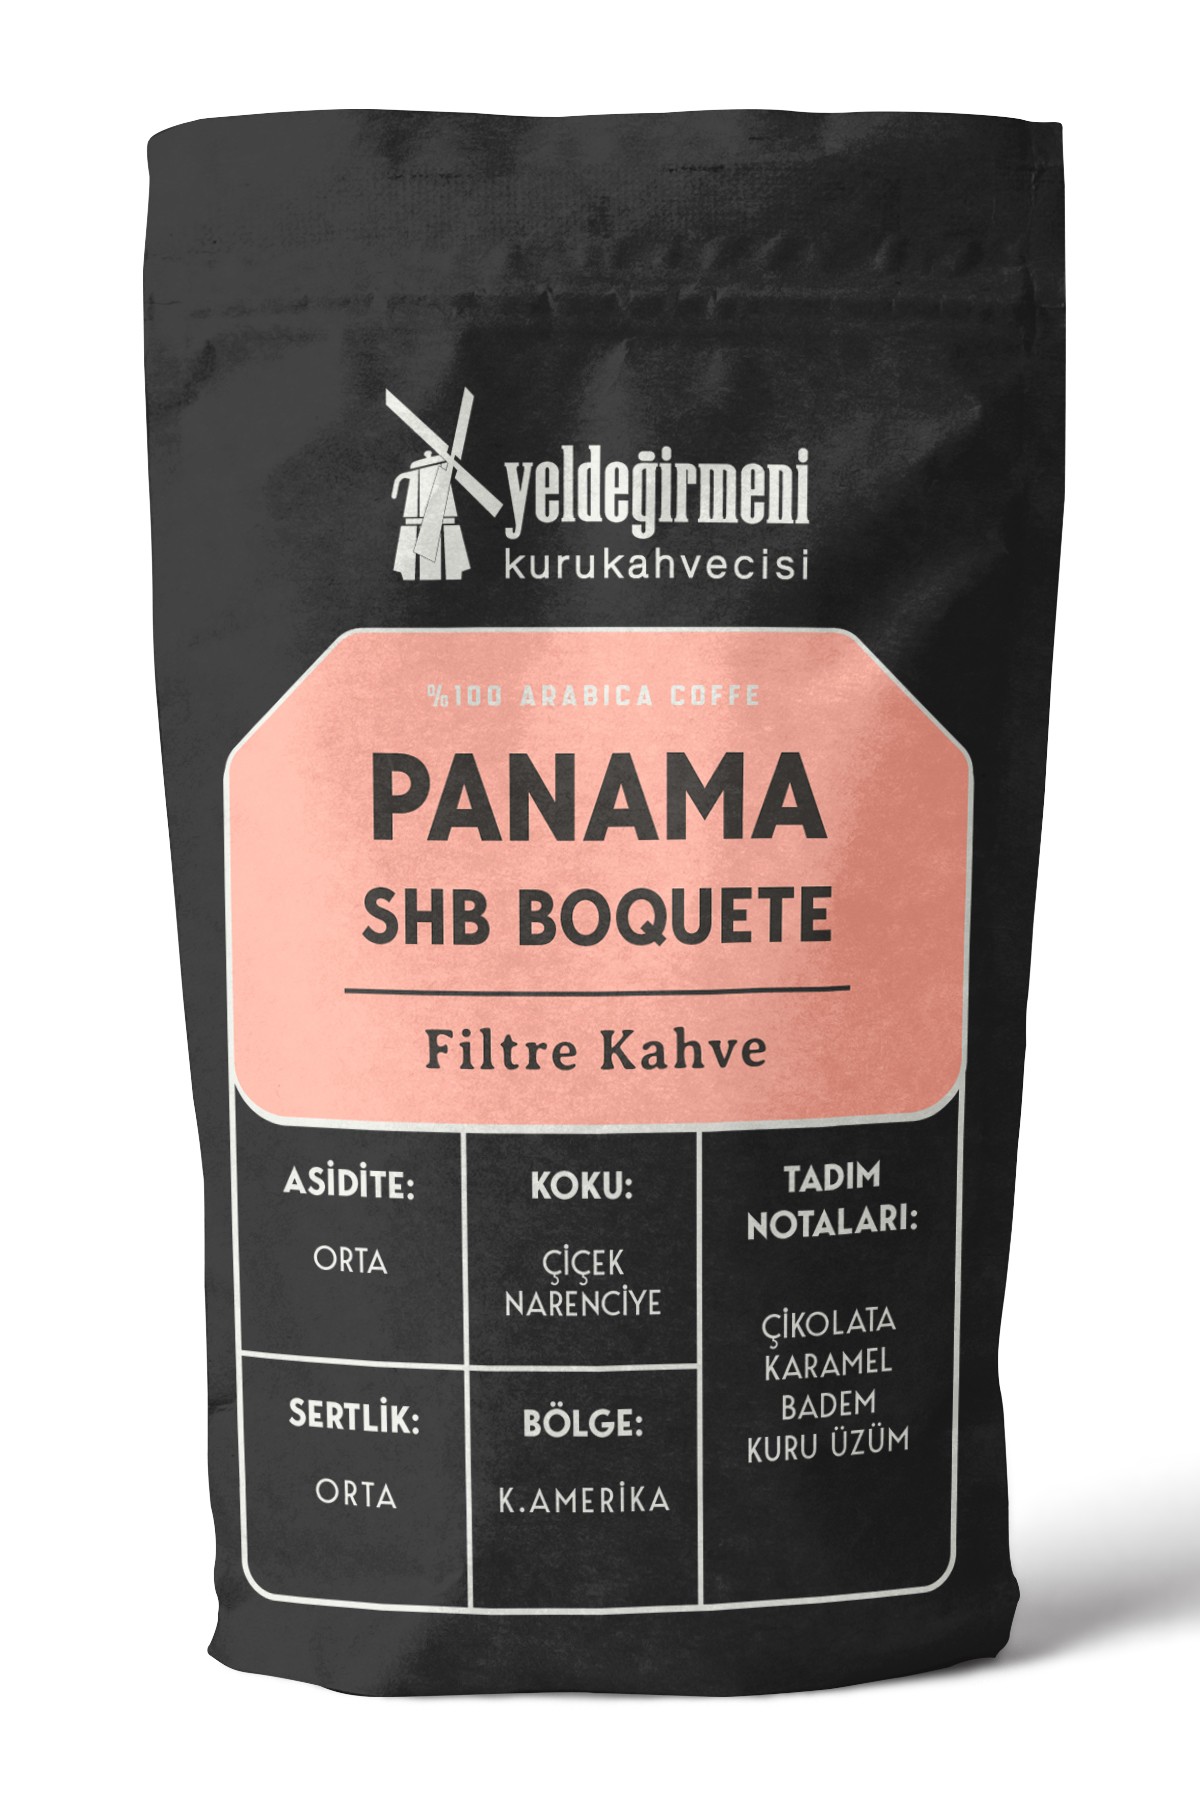 Panama SHB Boquete Filtre Kahve